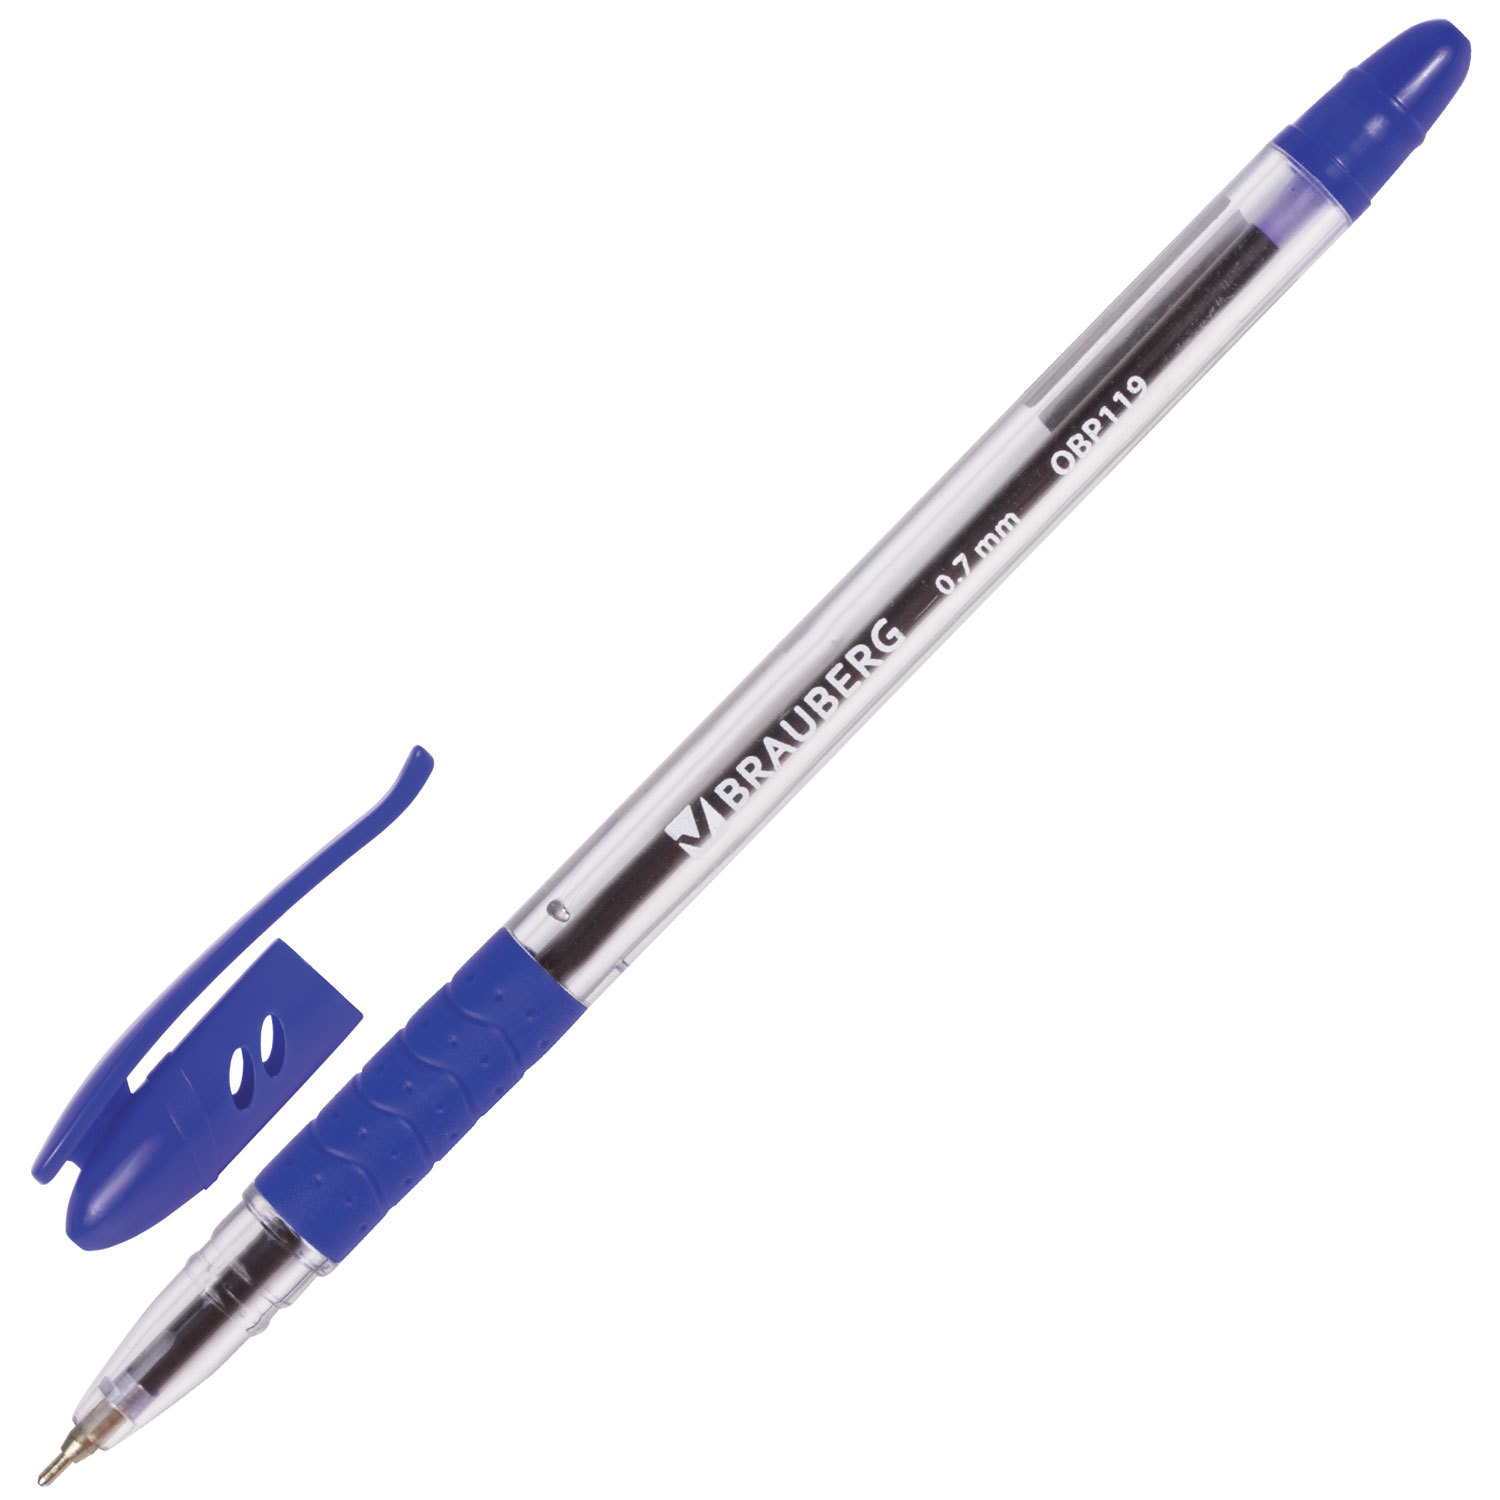 Ручка с прозрачным корпусом. Ручка шариковая БРАУБЕРГ 0.7. Ручка шариковая синяя БРАУБЕРГ. Ручка БРАУБЕРГ 0.7 мм obp119. Ручка БРАУБЕРГ 0.7 мм.